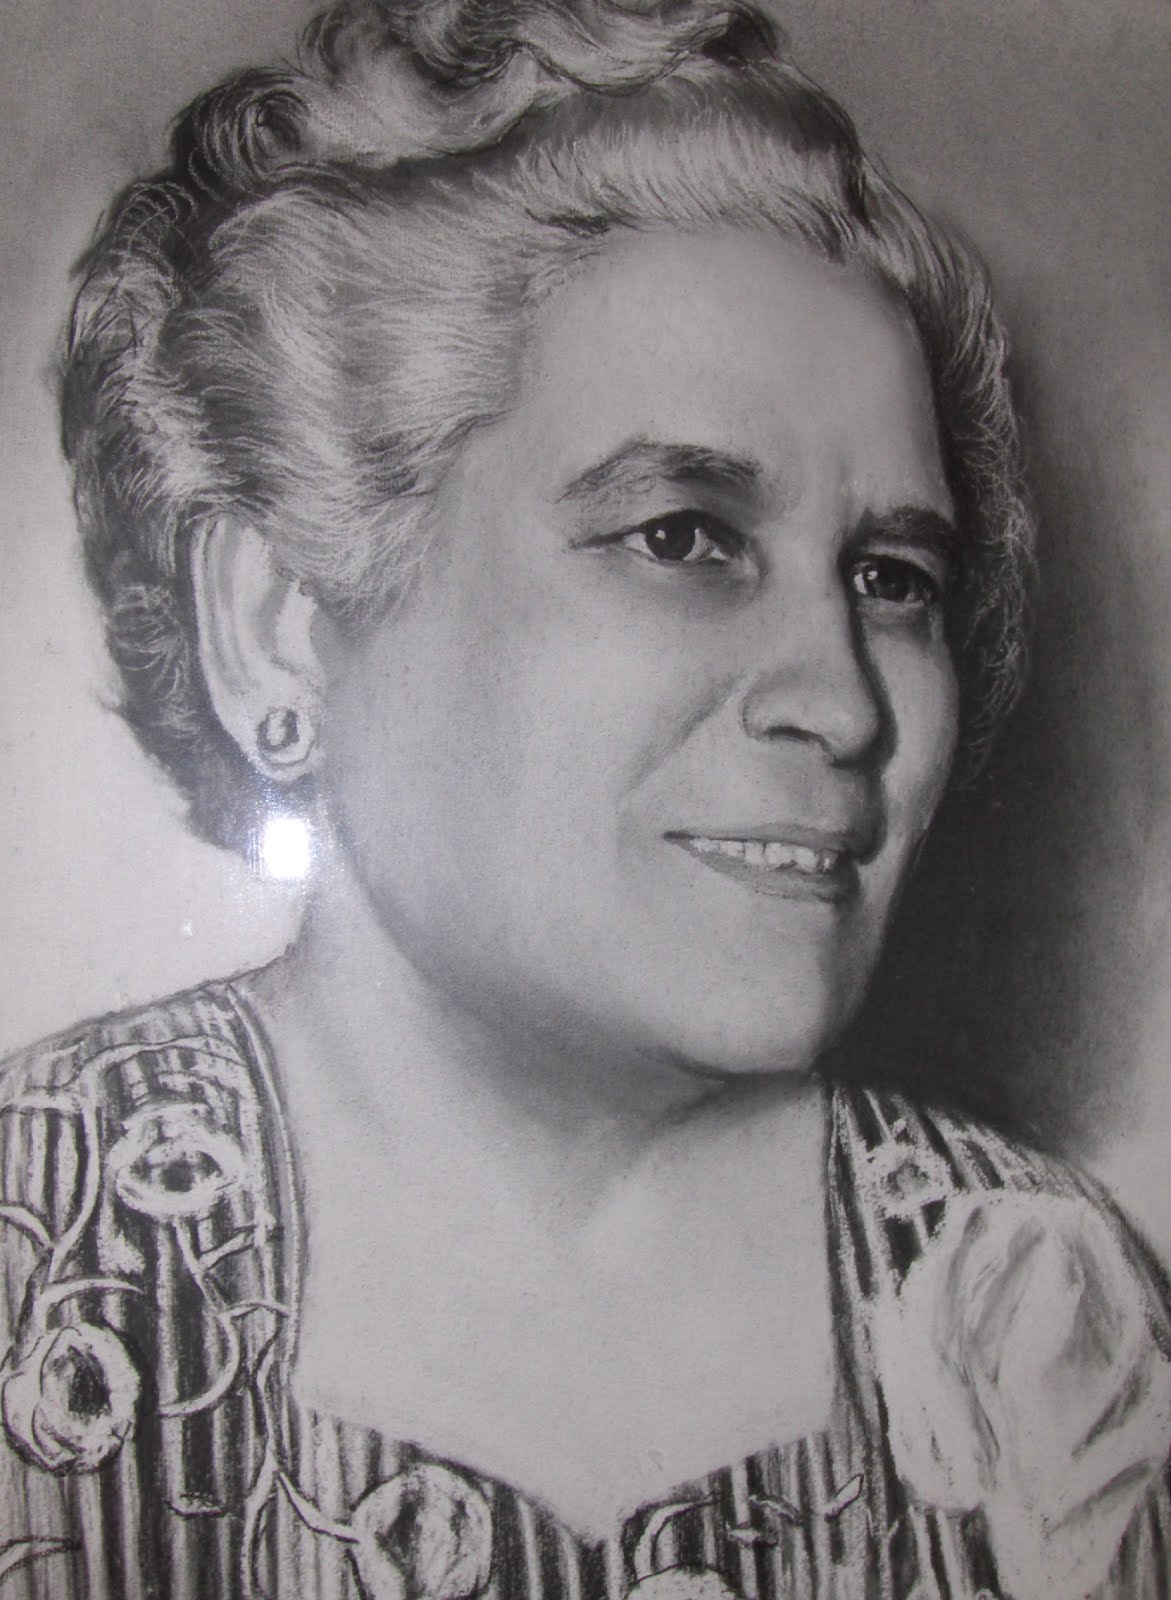 Virginia Vázquez Mendoza